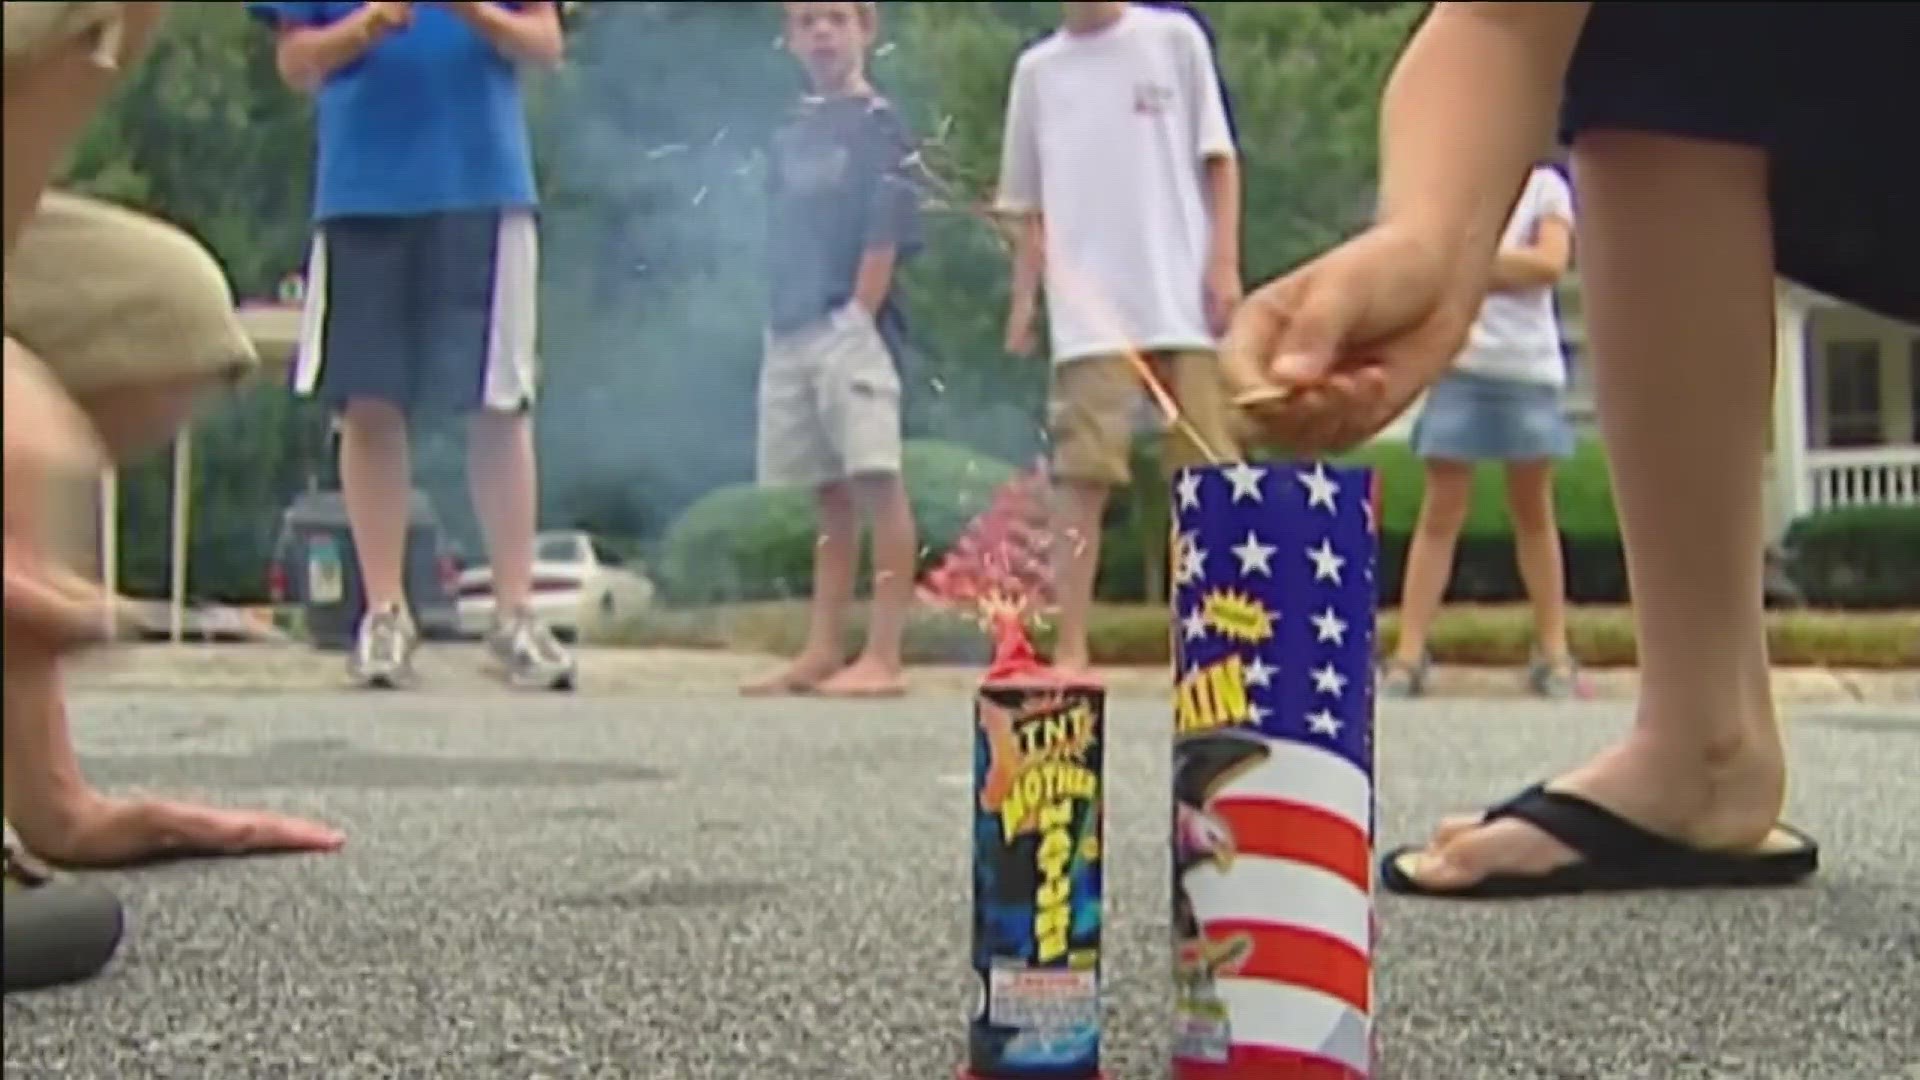 Fireworks laws in Toledo, northwest Ohio